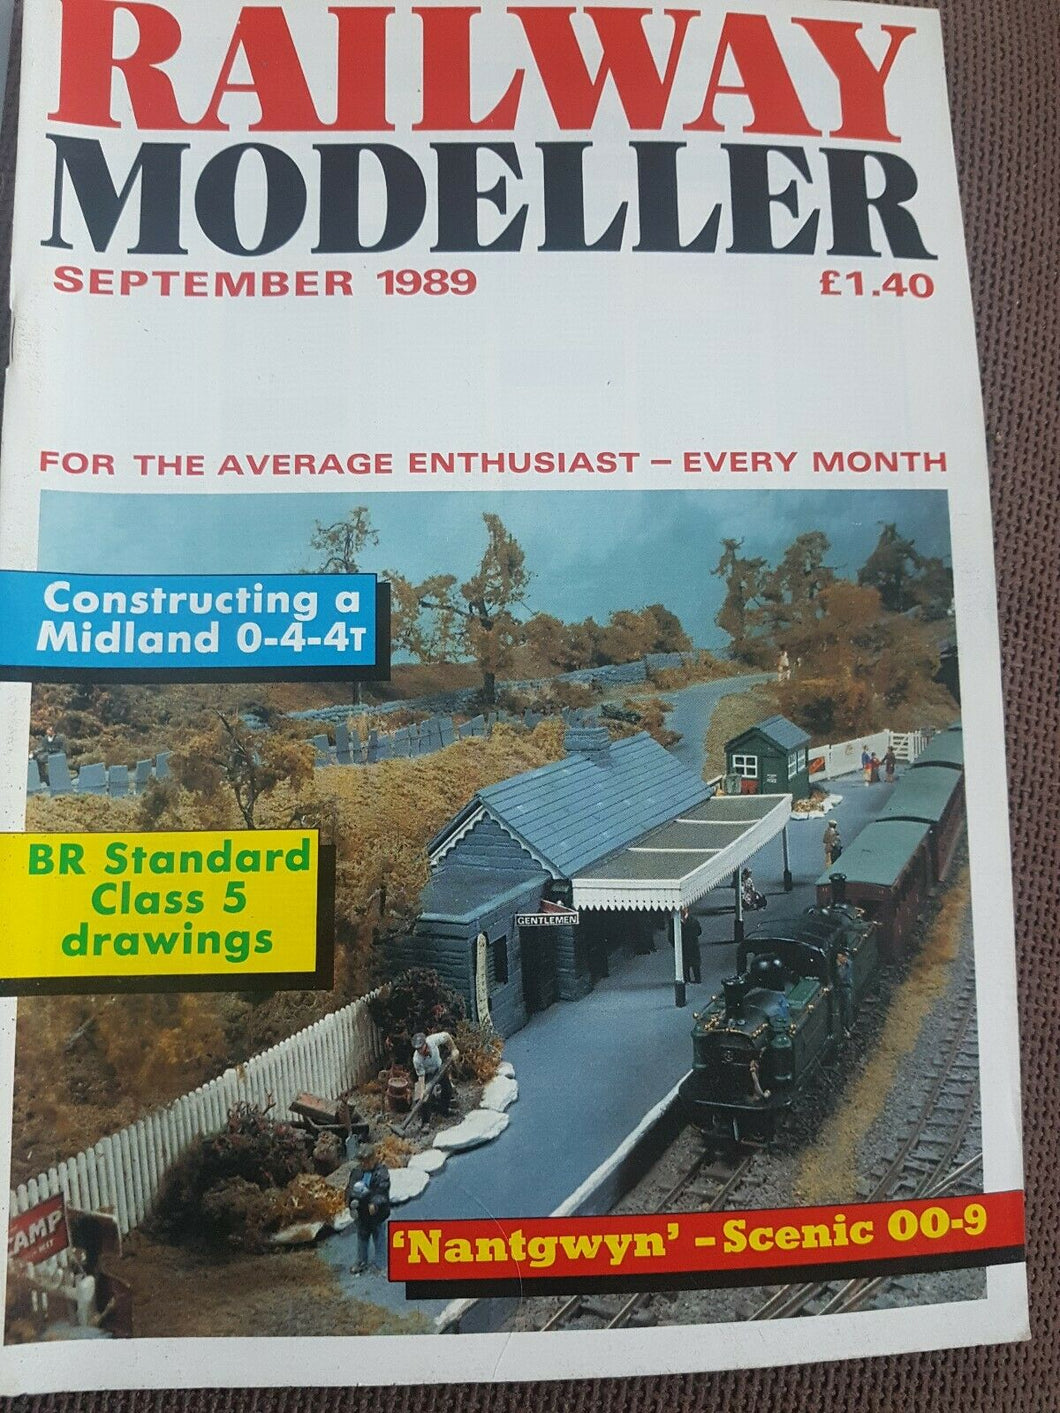 Railway modeller magazine September 1989